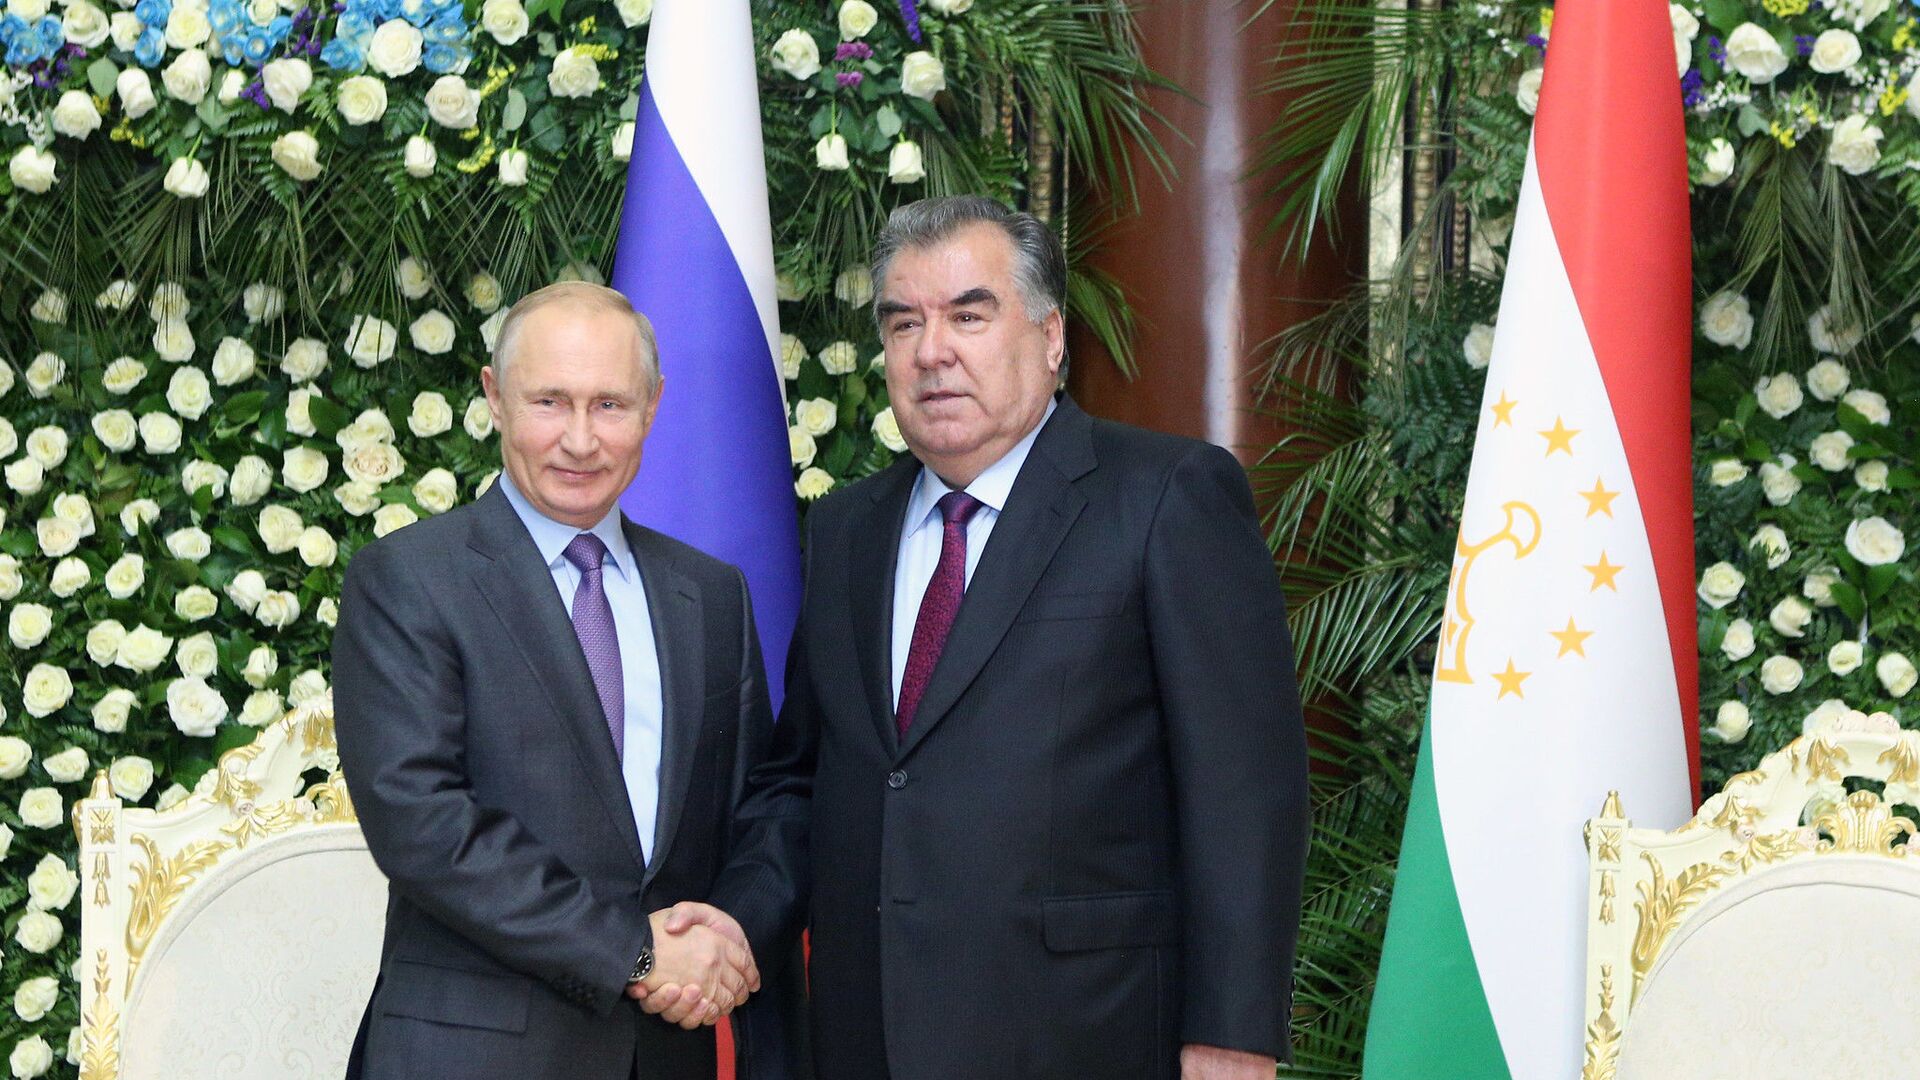 Рабочий визит президента РФ В. Путина в Таджикистан для участия в СВМДА - Sputnik Таджикистан, 1920, 27.06.2022